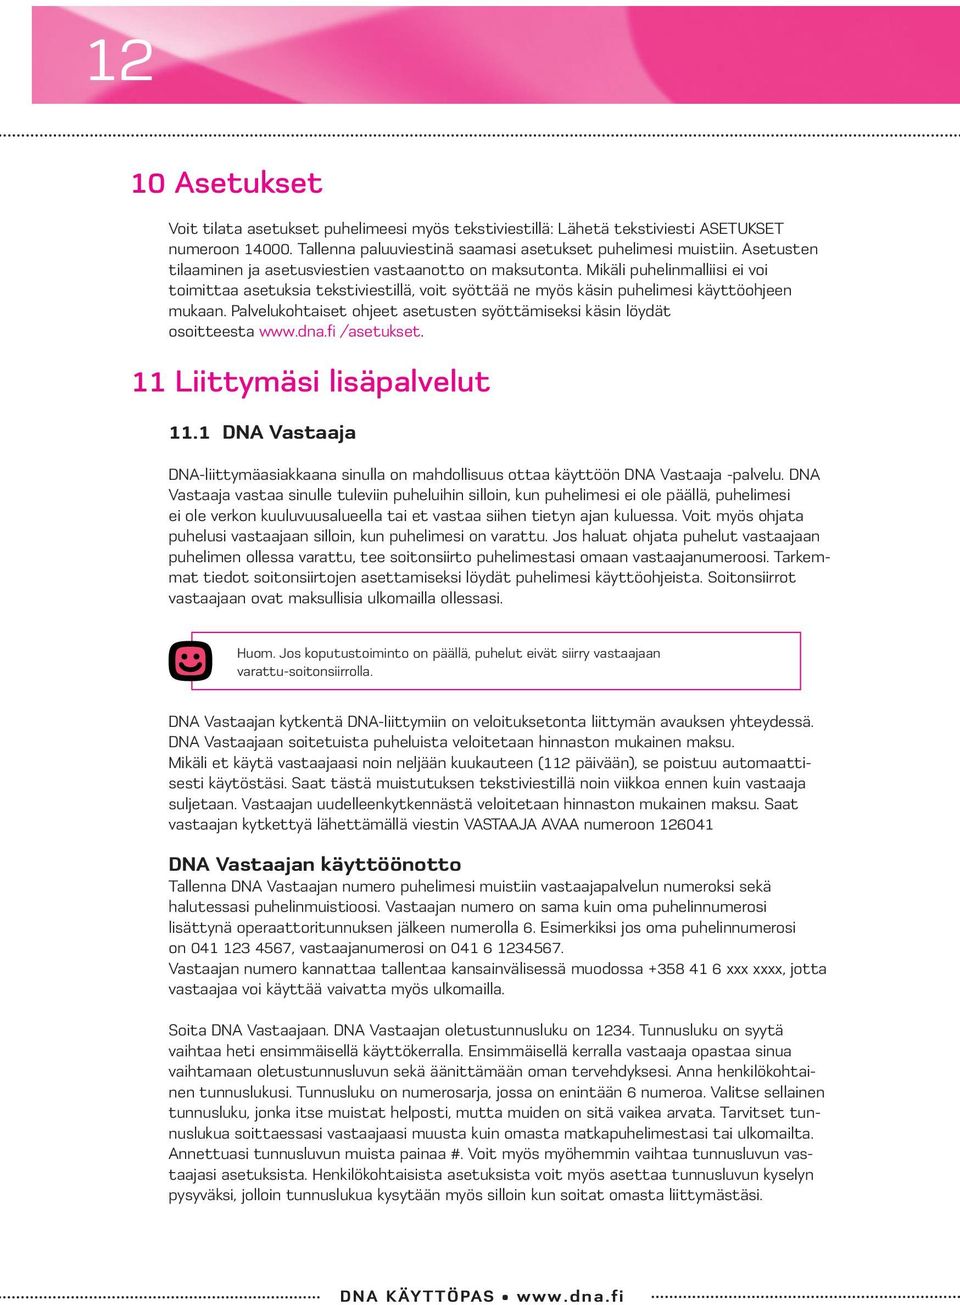 Palvelukohtaiset ohjeet asetusten syöttämiseksi käsin löydät osoitteesta www.dna.fi /asetukset. 11 Liittymäsi lisäpalvelut 11.